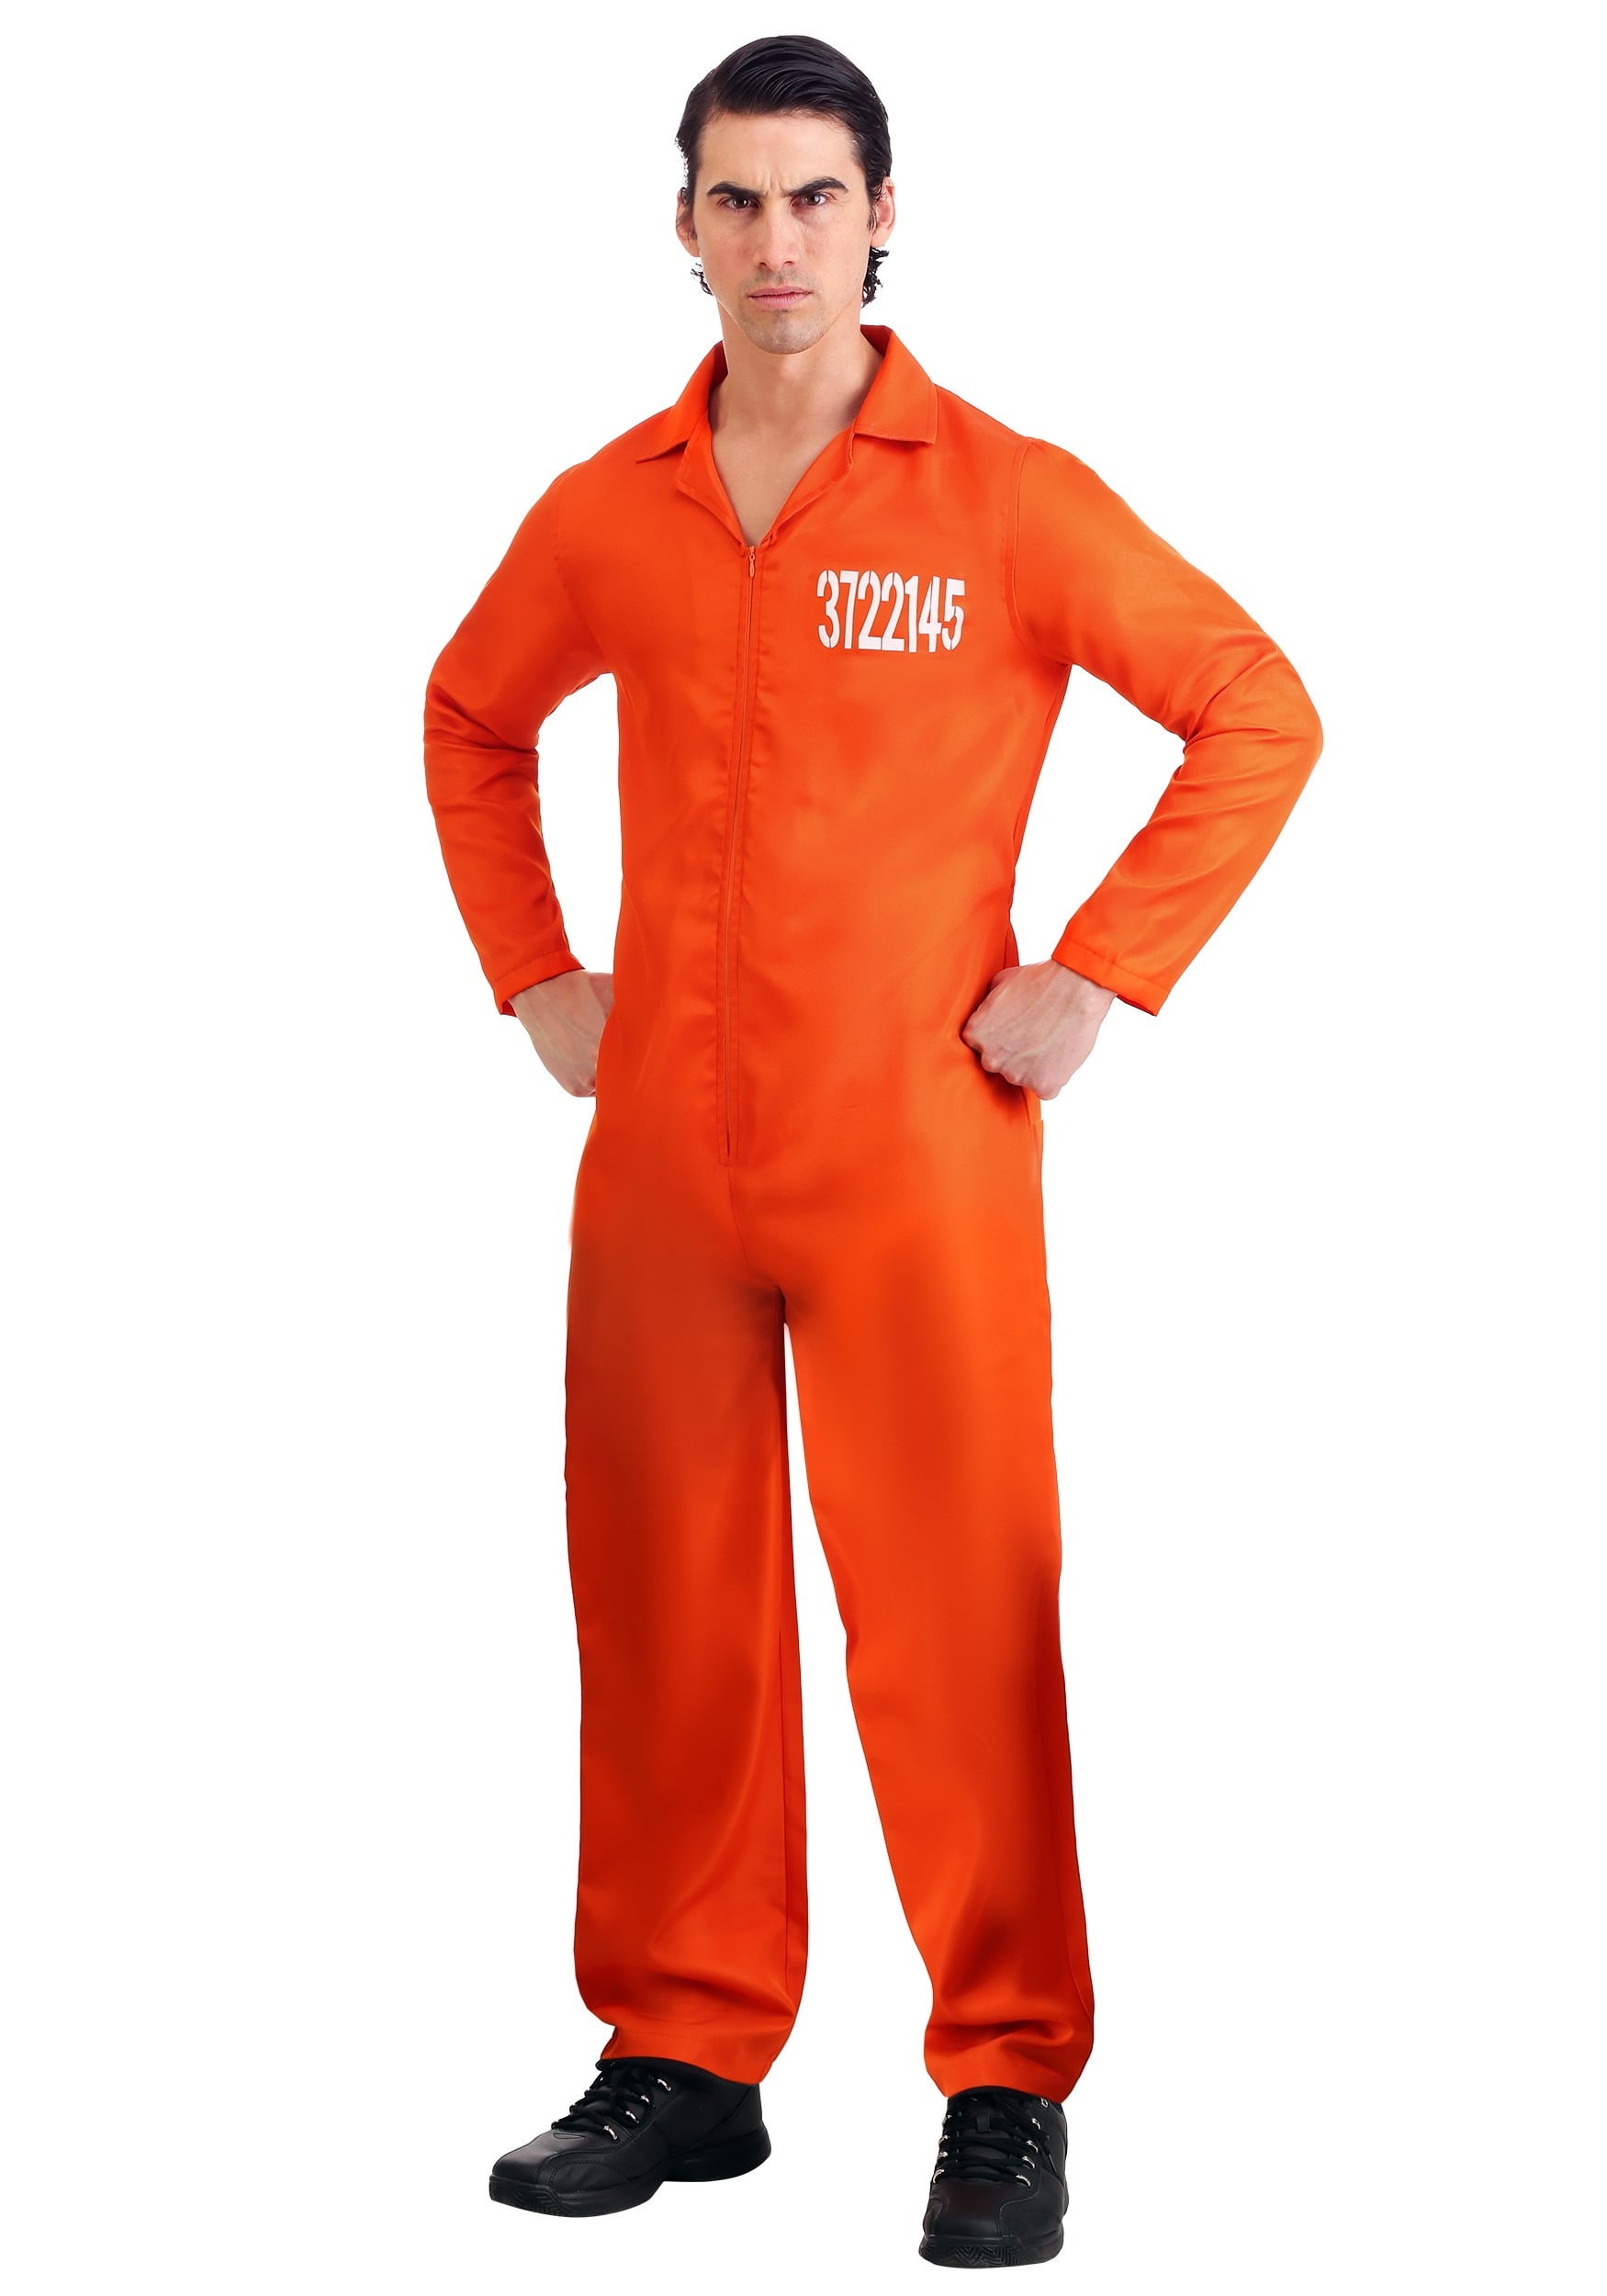 Men's Prison Orange Jumpsuit - Walmart.com